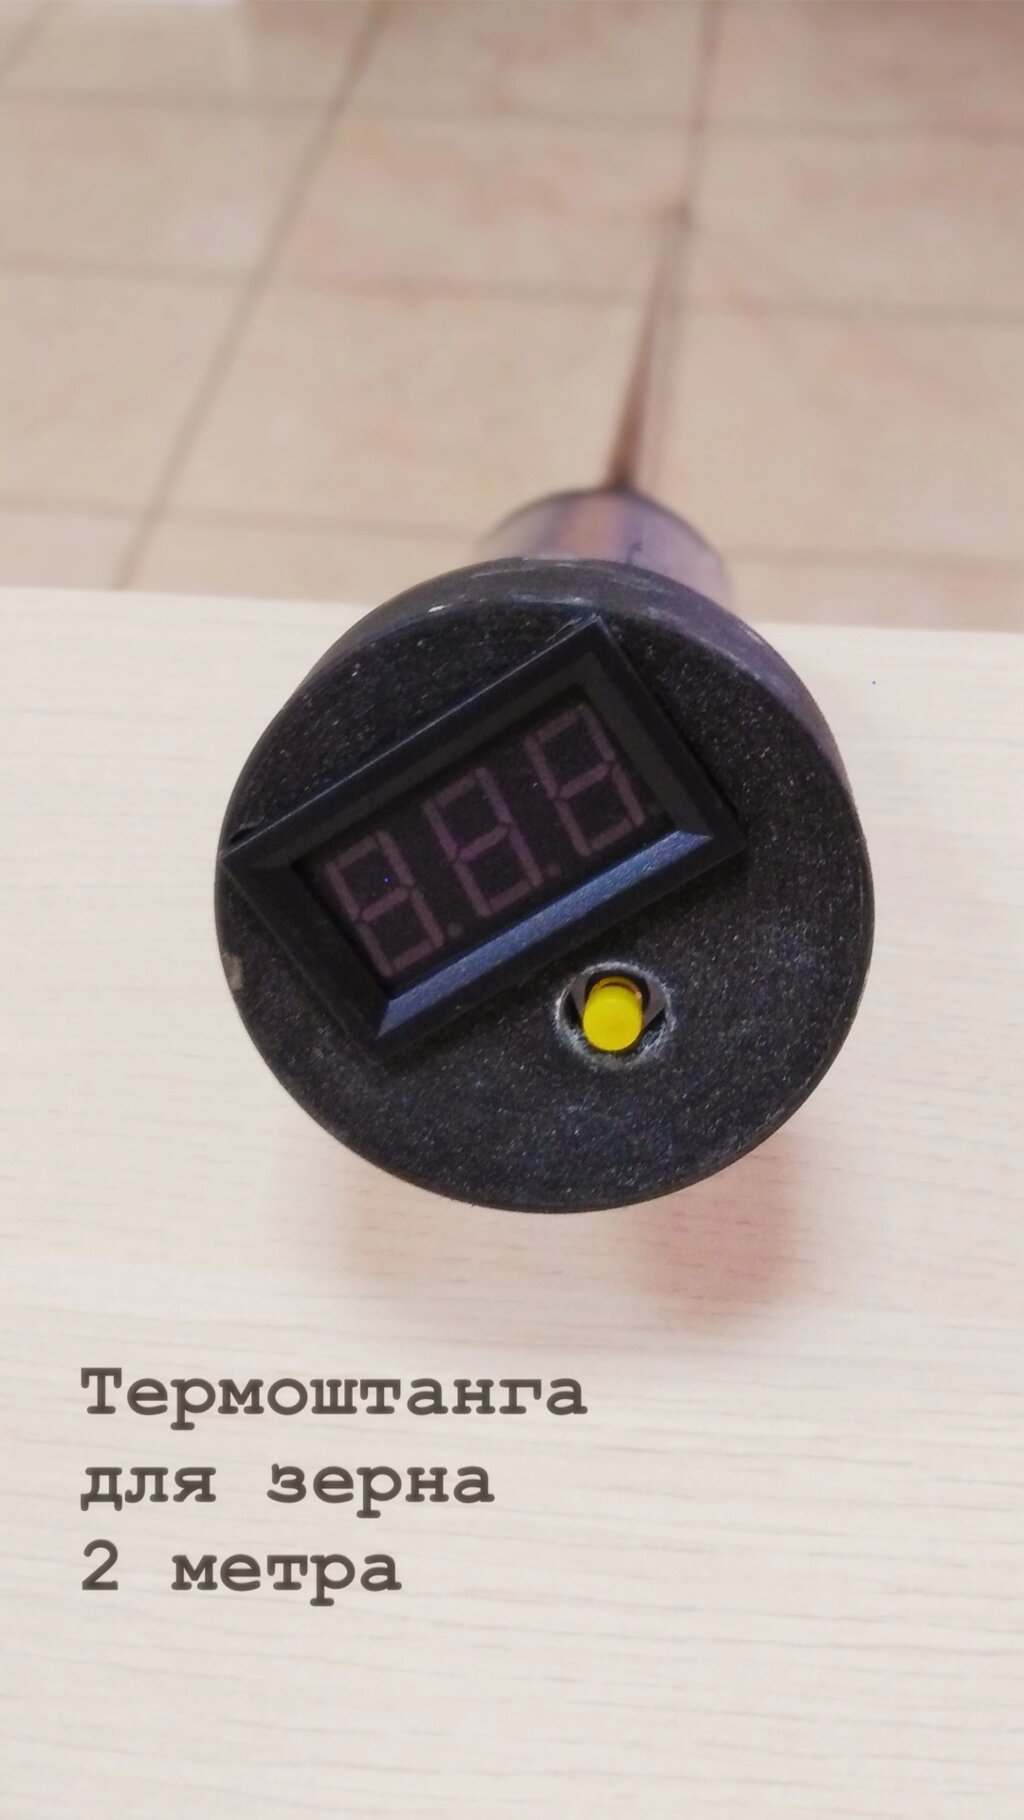 Термоштанга для измерения температуры зерна ИТЦ-2 нержавейка 2 метра от компании ООО "АССЕРВИС" лабораторное оборудование и весы по низким ценам. - фото 1